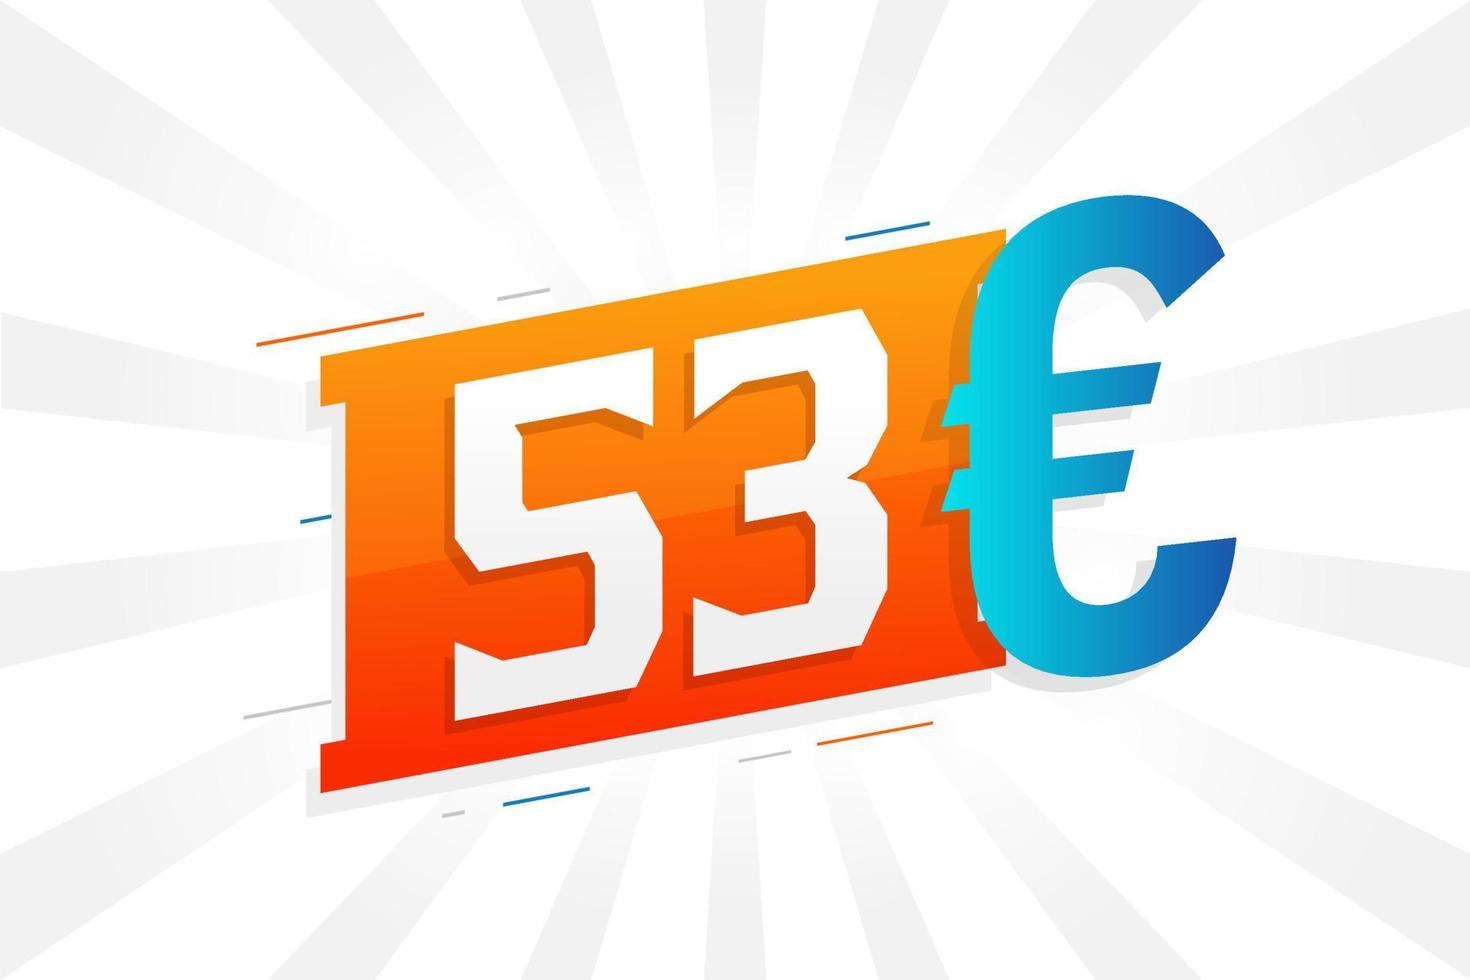 símbolo de texto de vetor de moeda de 53 euros. vetor de estoque de dinheiro da união europeia de 53 euros